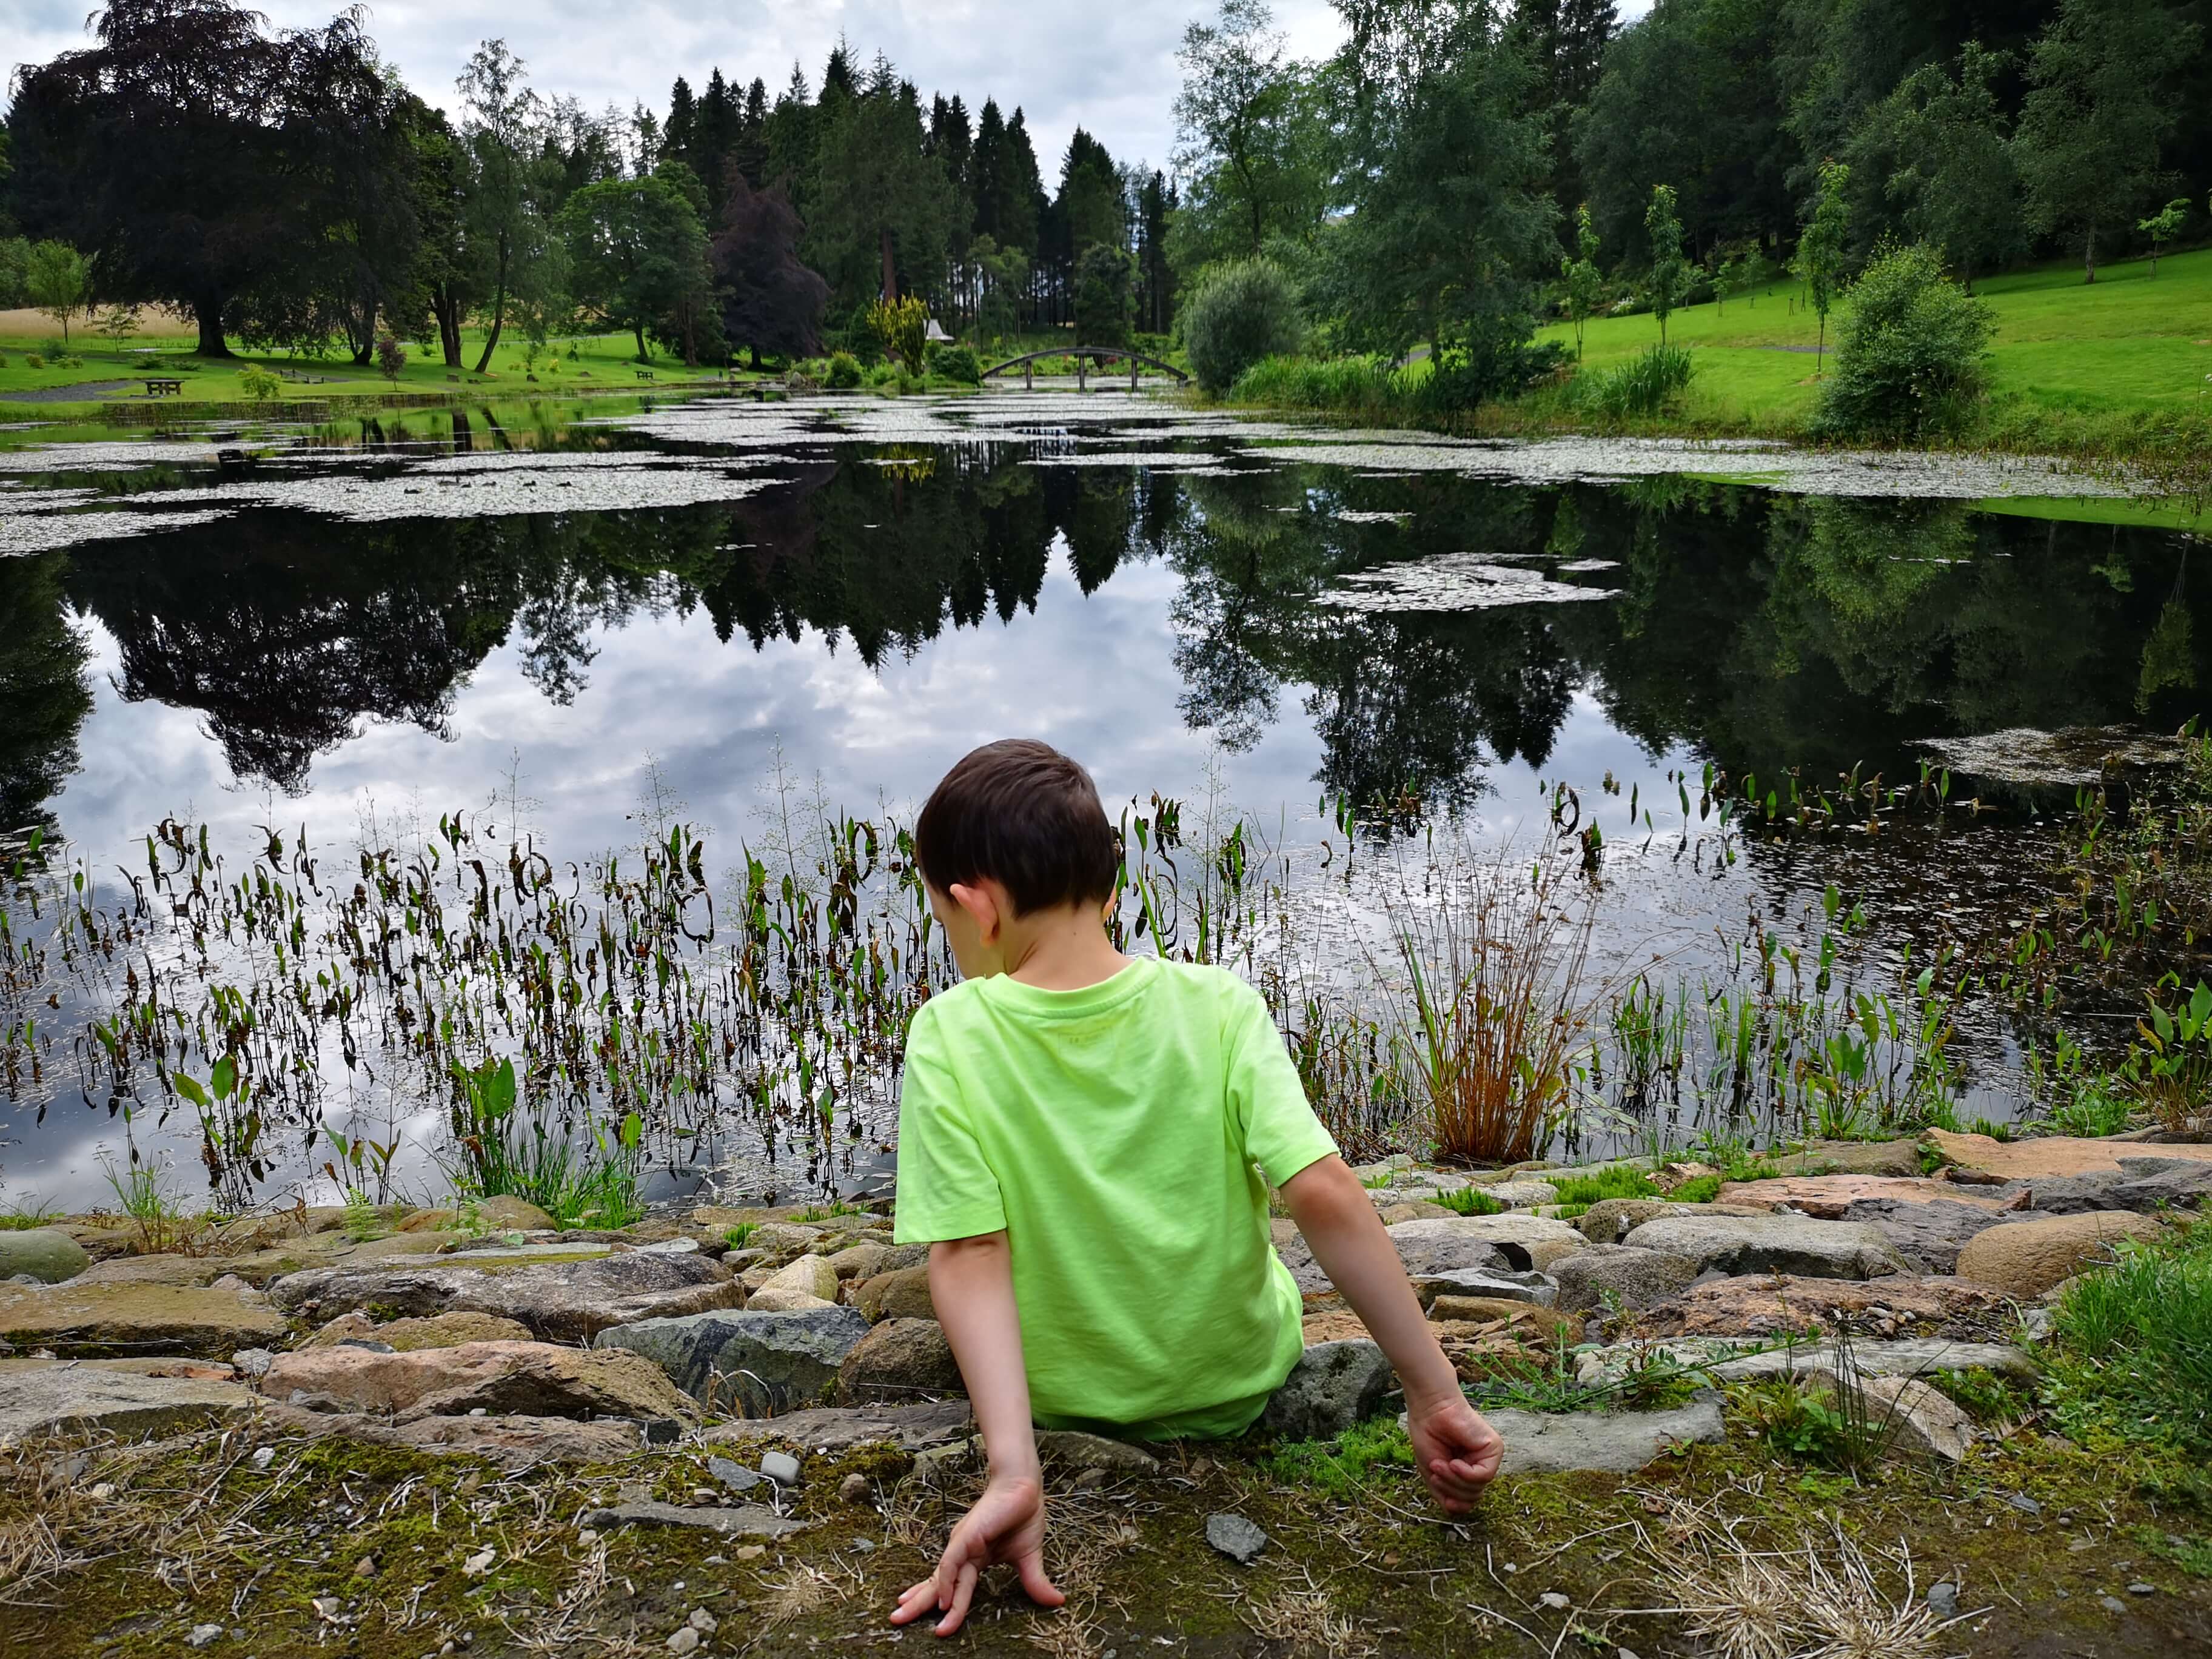 Emma's nephew sitting down beside the pond.